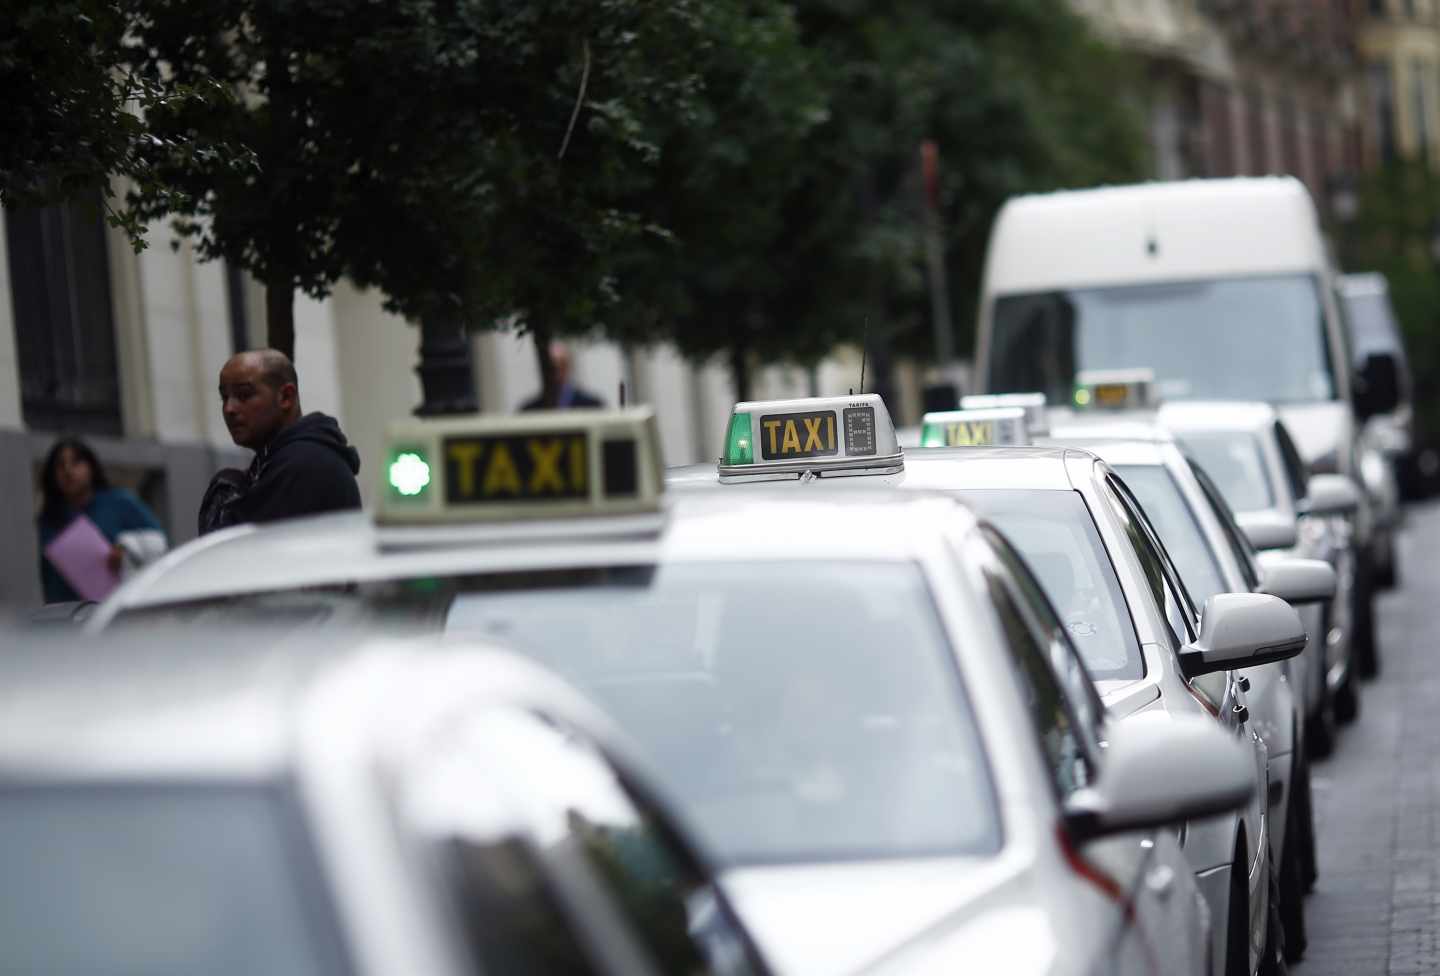 Los taxistas proponen un servicio de taxis compartidos para competir con Uber y Cabify.